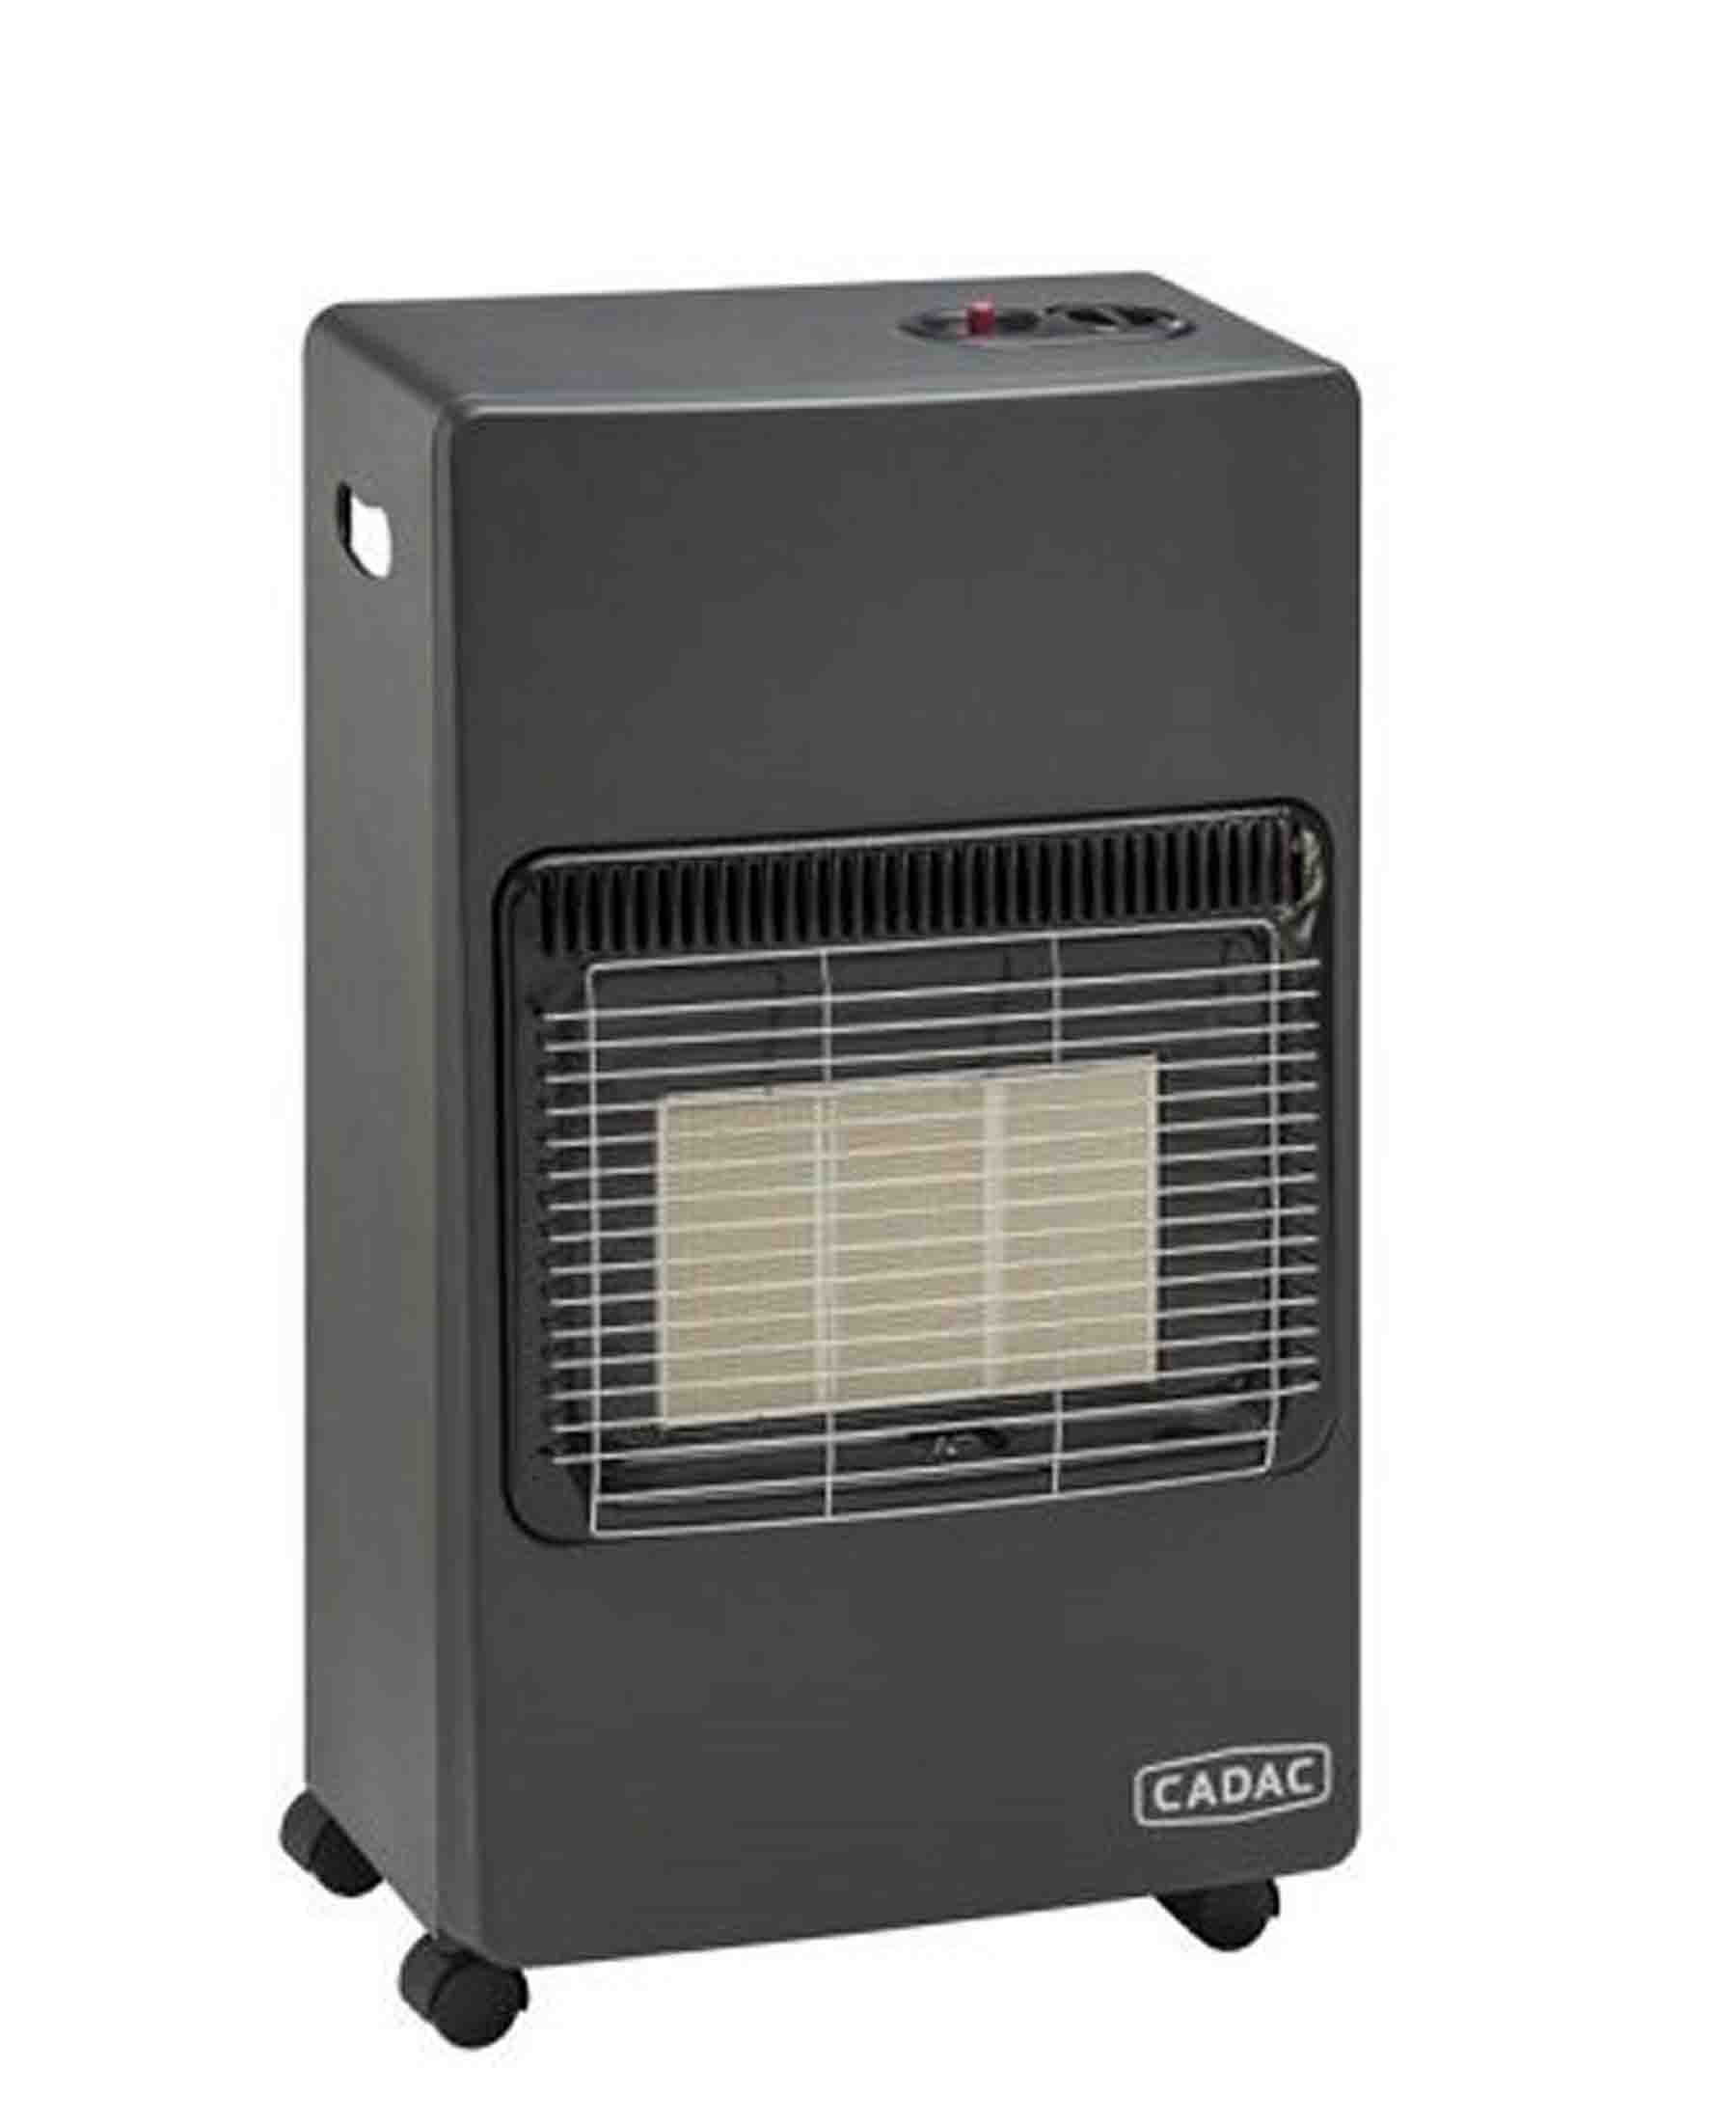 Cadac 3 Panel Gas Heater - Black